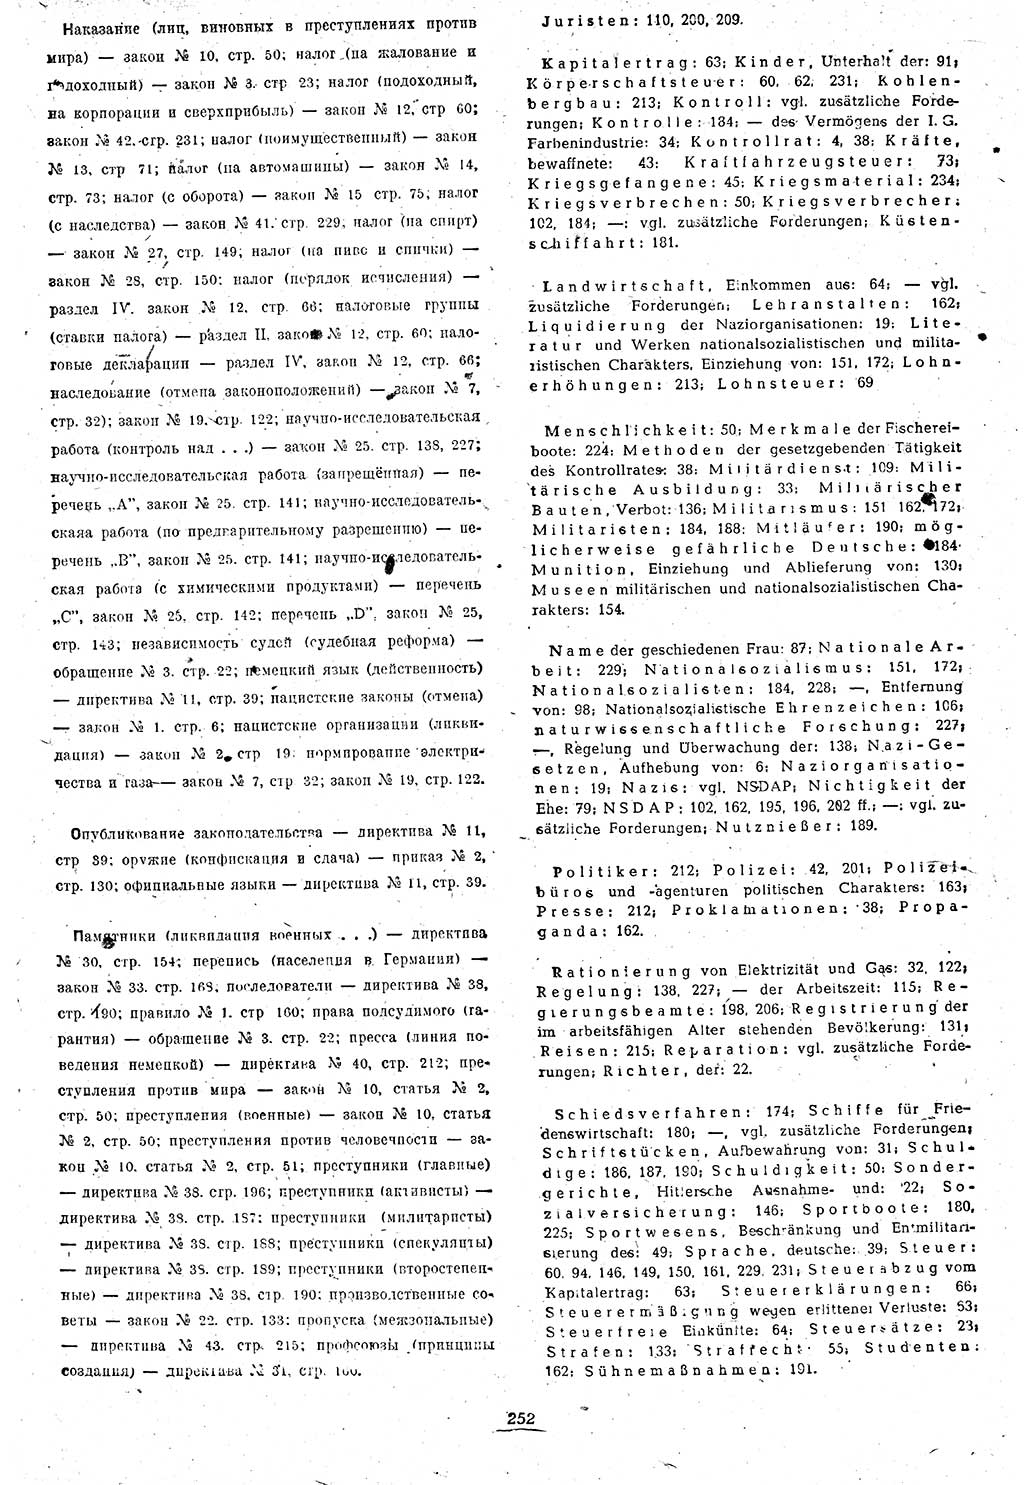 Amtsblatt des Kontrollrats (ABlKR) in Deutschland 1946, Seite 252/2 (ABlKR Dtl. 1946, S. 252/2)